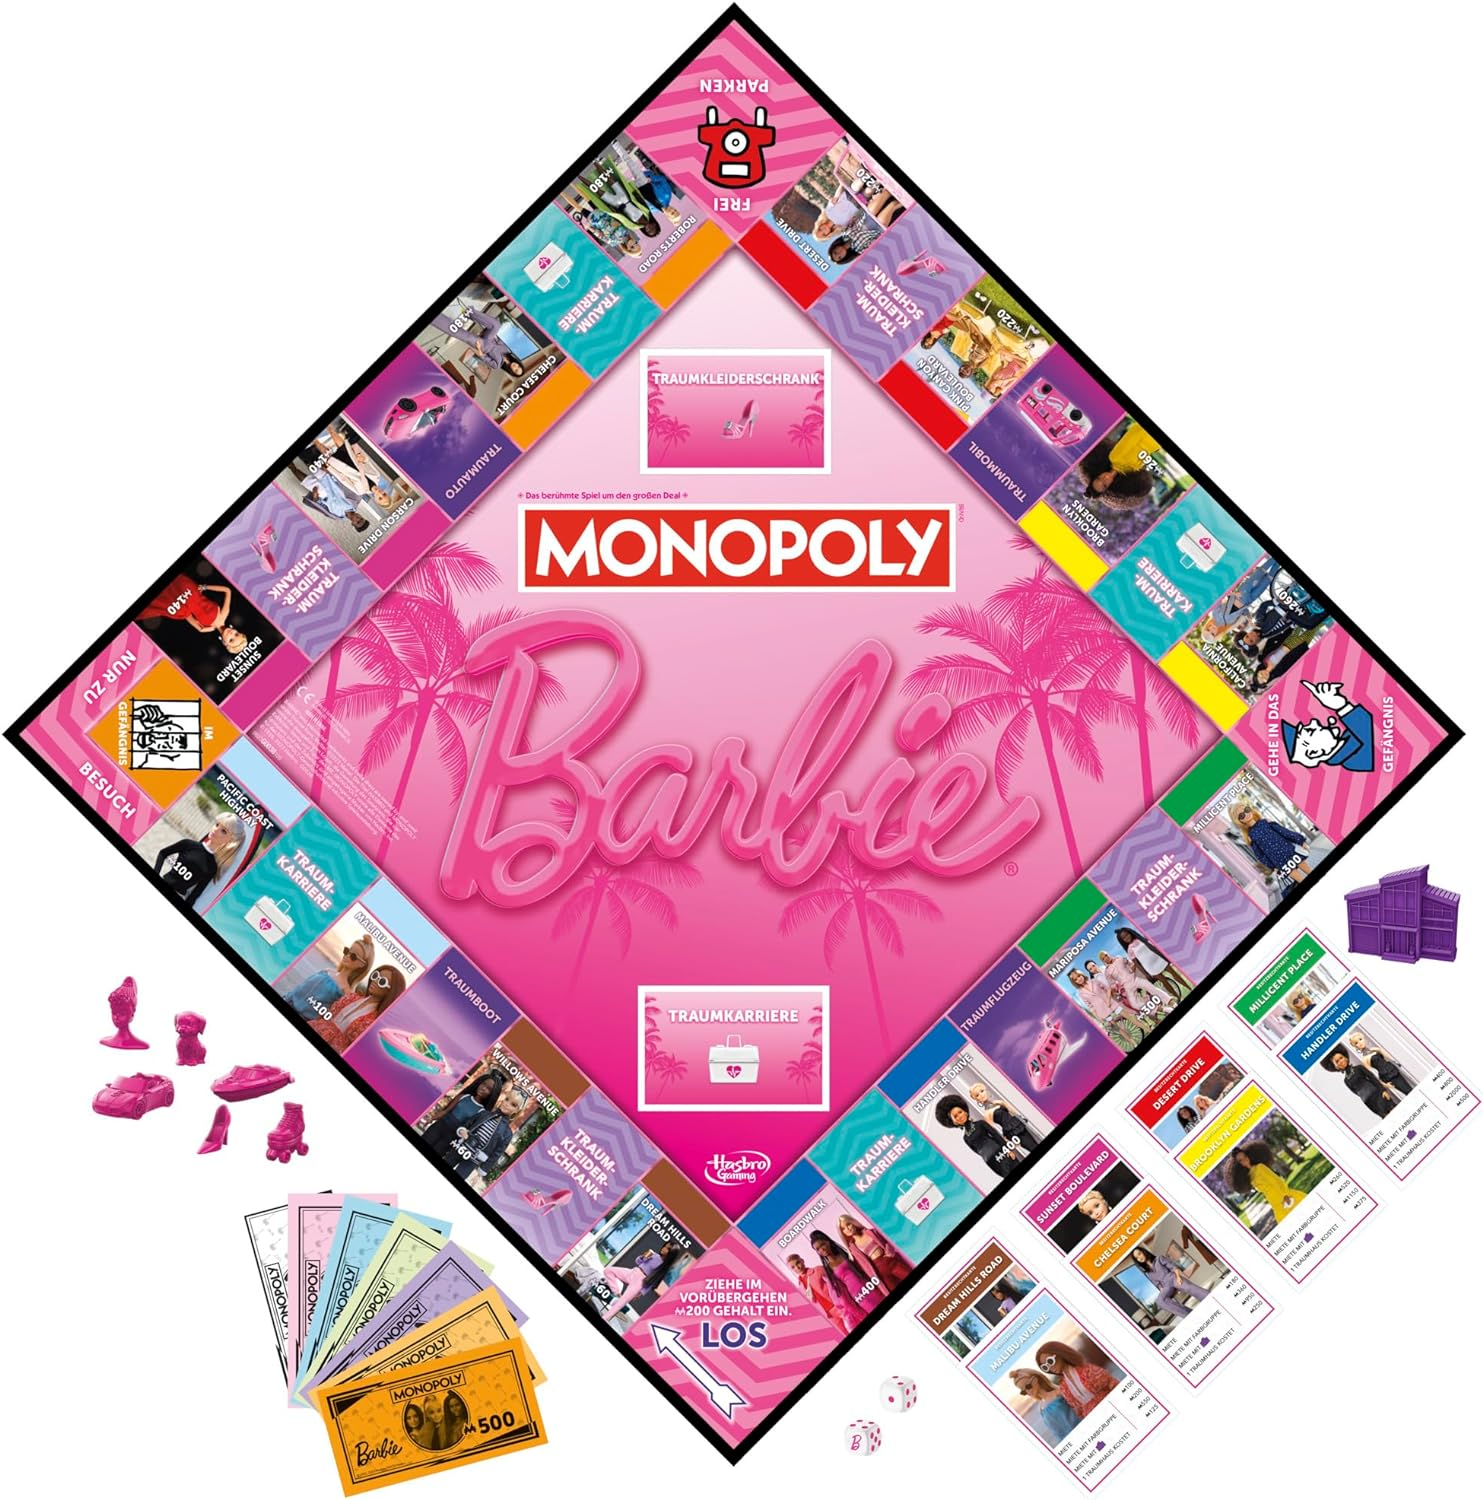 + Barbie Monopoly - Trumps Barbie Top